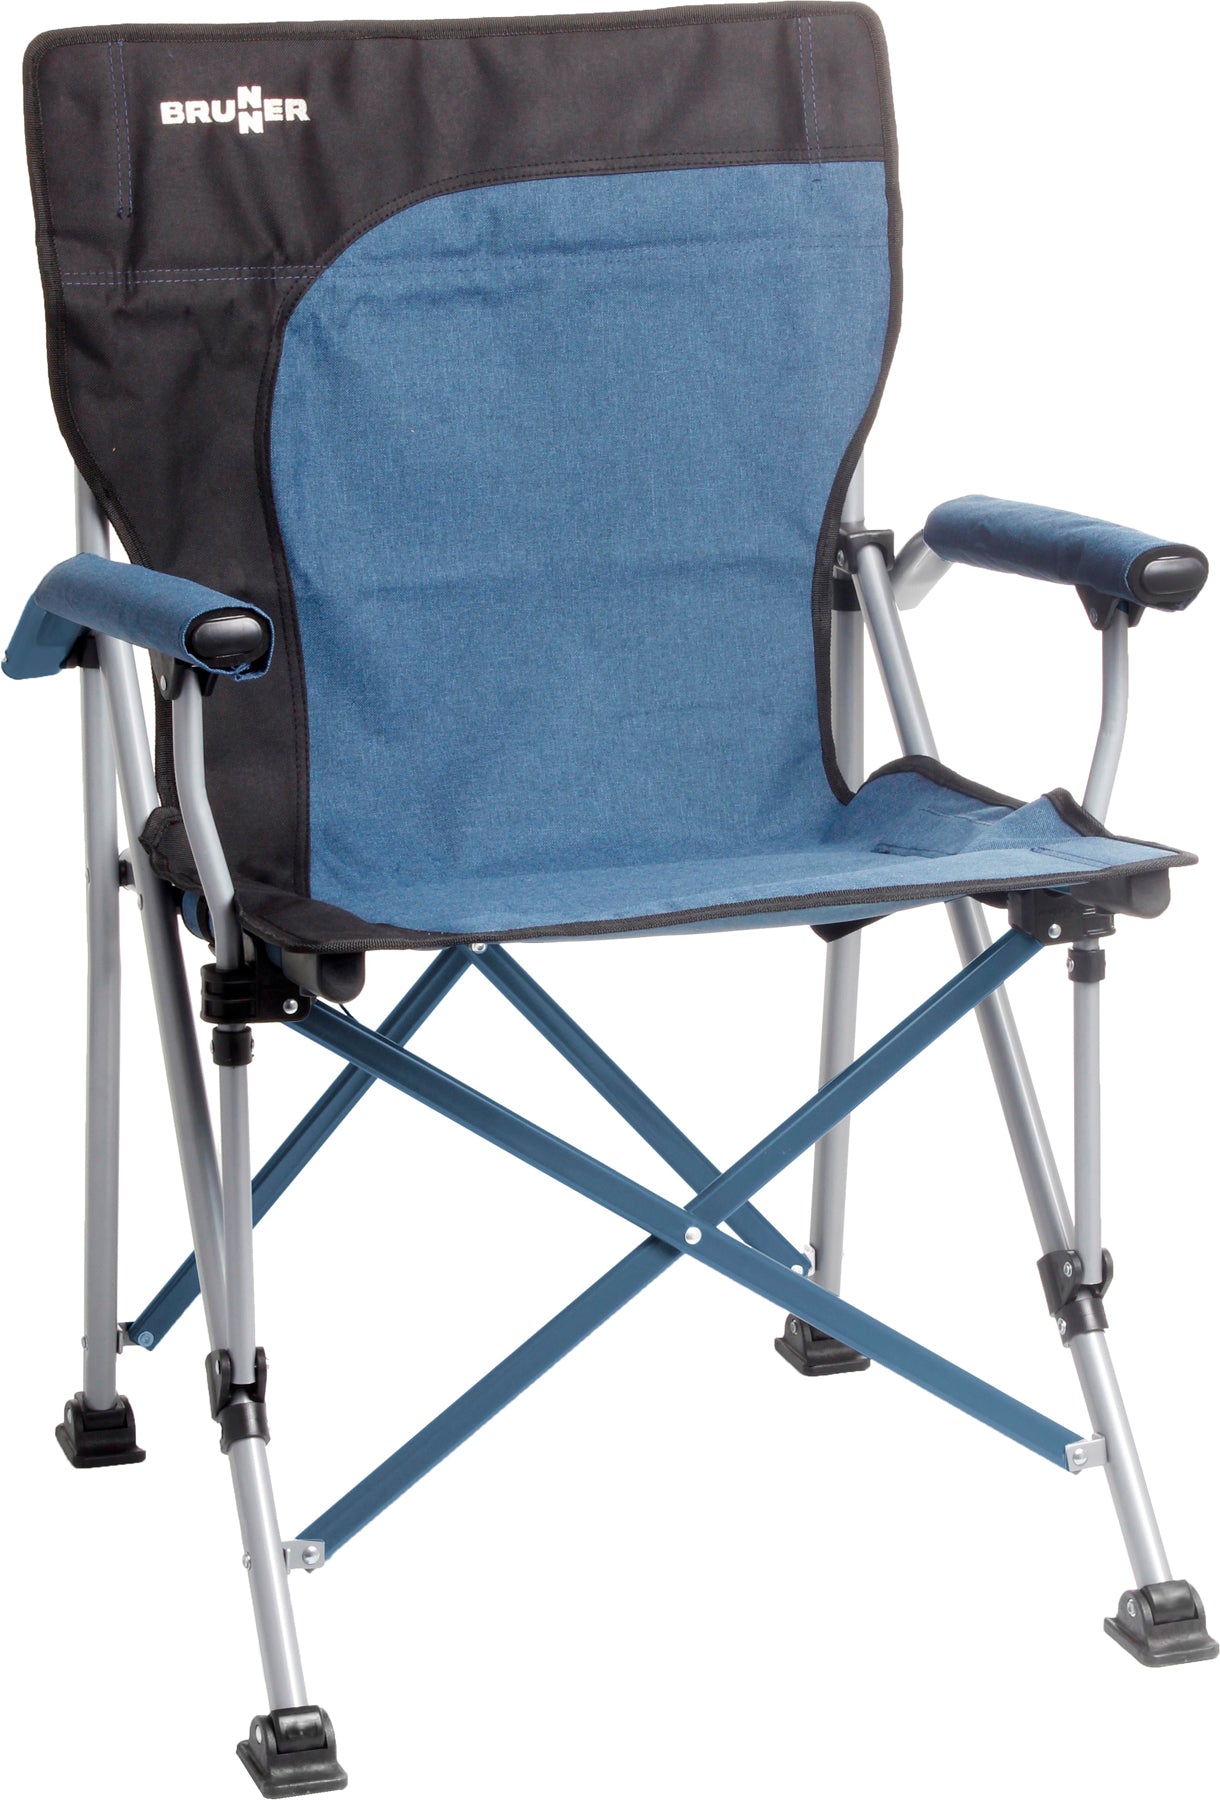 Качествен сгъваем стол за къмпинг лесно преносим и удобен, здрава конструкция. High quality folding chair for camping, compact folded size. Strong and tough reliable.